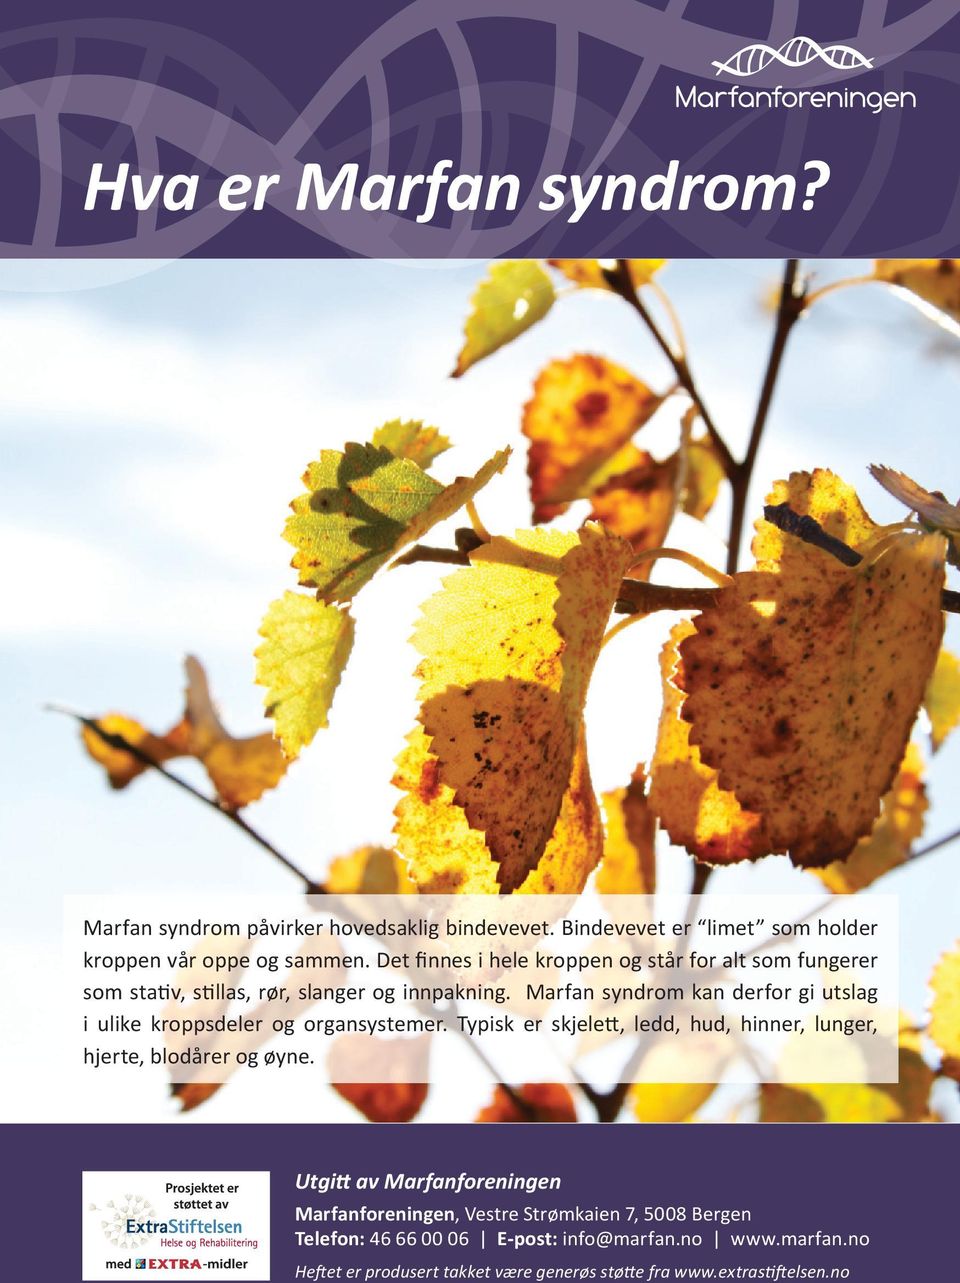 Marfan syndrom kan derfor gi utslag i ulike kroppsdeler og organsystemer. Typisk er skjelett, ledd, hud, hinner, lunger, hjerte, blodårer og øyne.